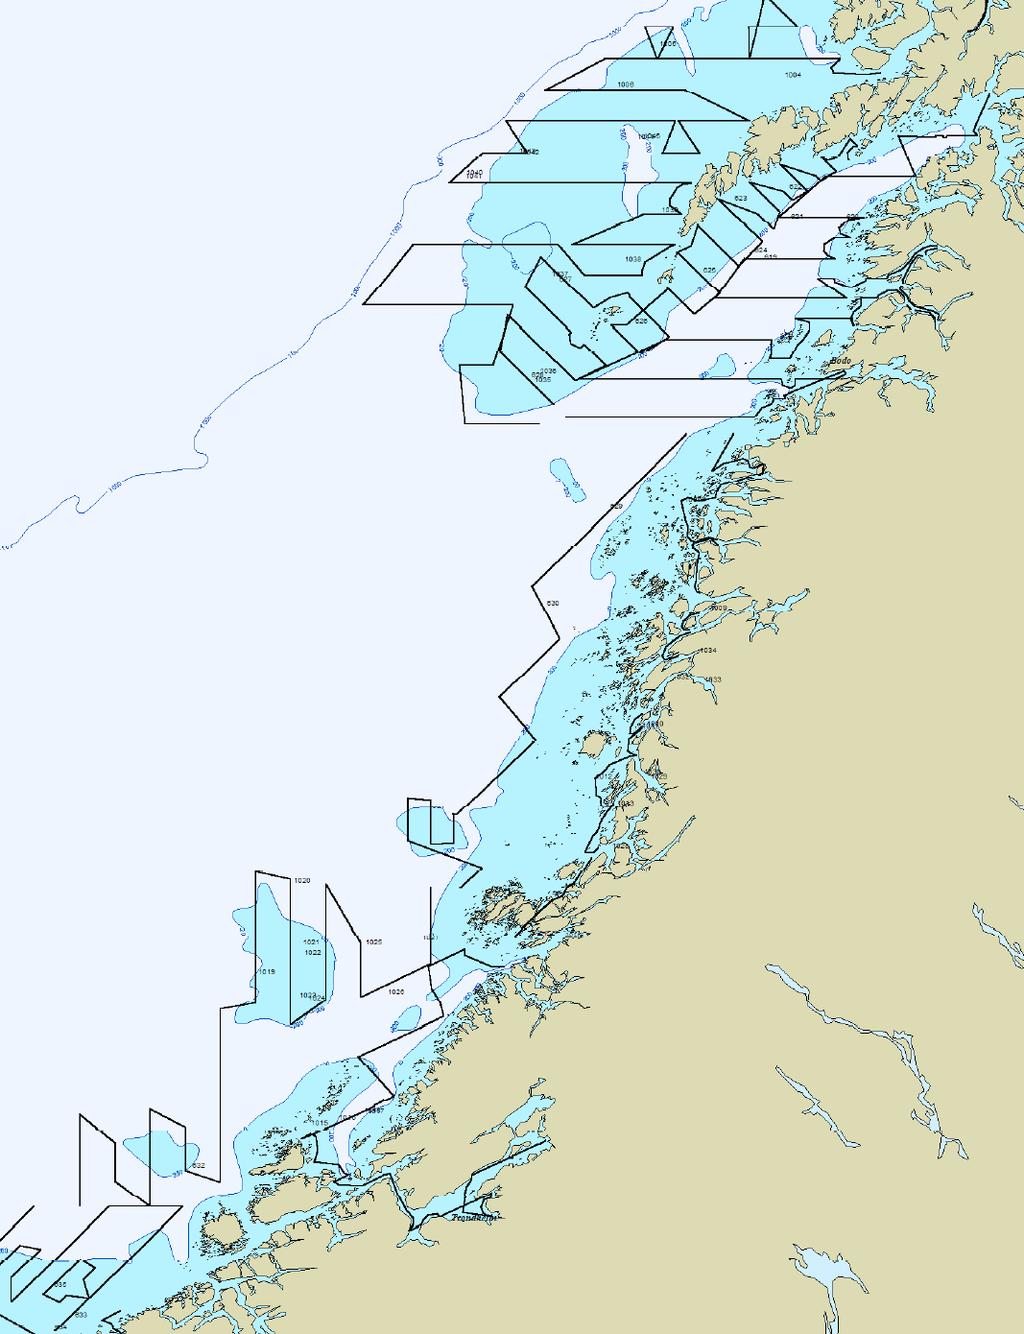 Toktrapport/Havforskningsinstituttet/ISSN 153-6294/Nr. 5 29 Troms-Vesterålen.